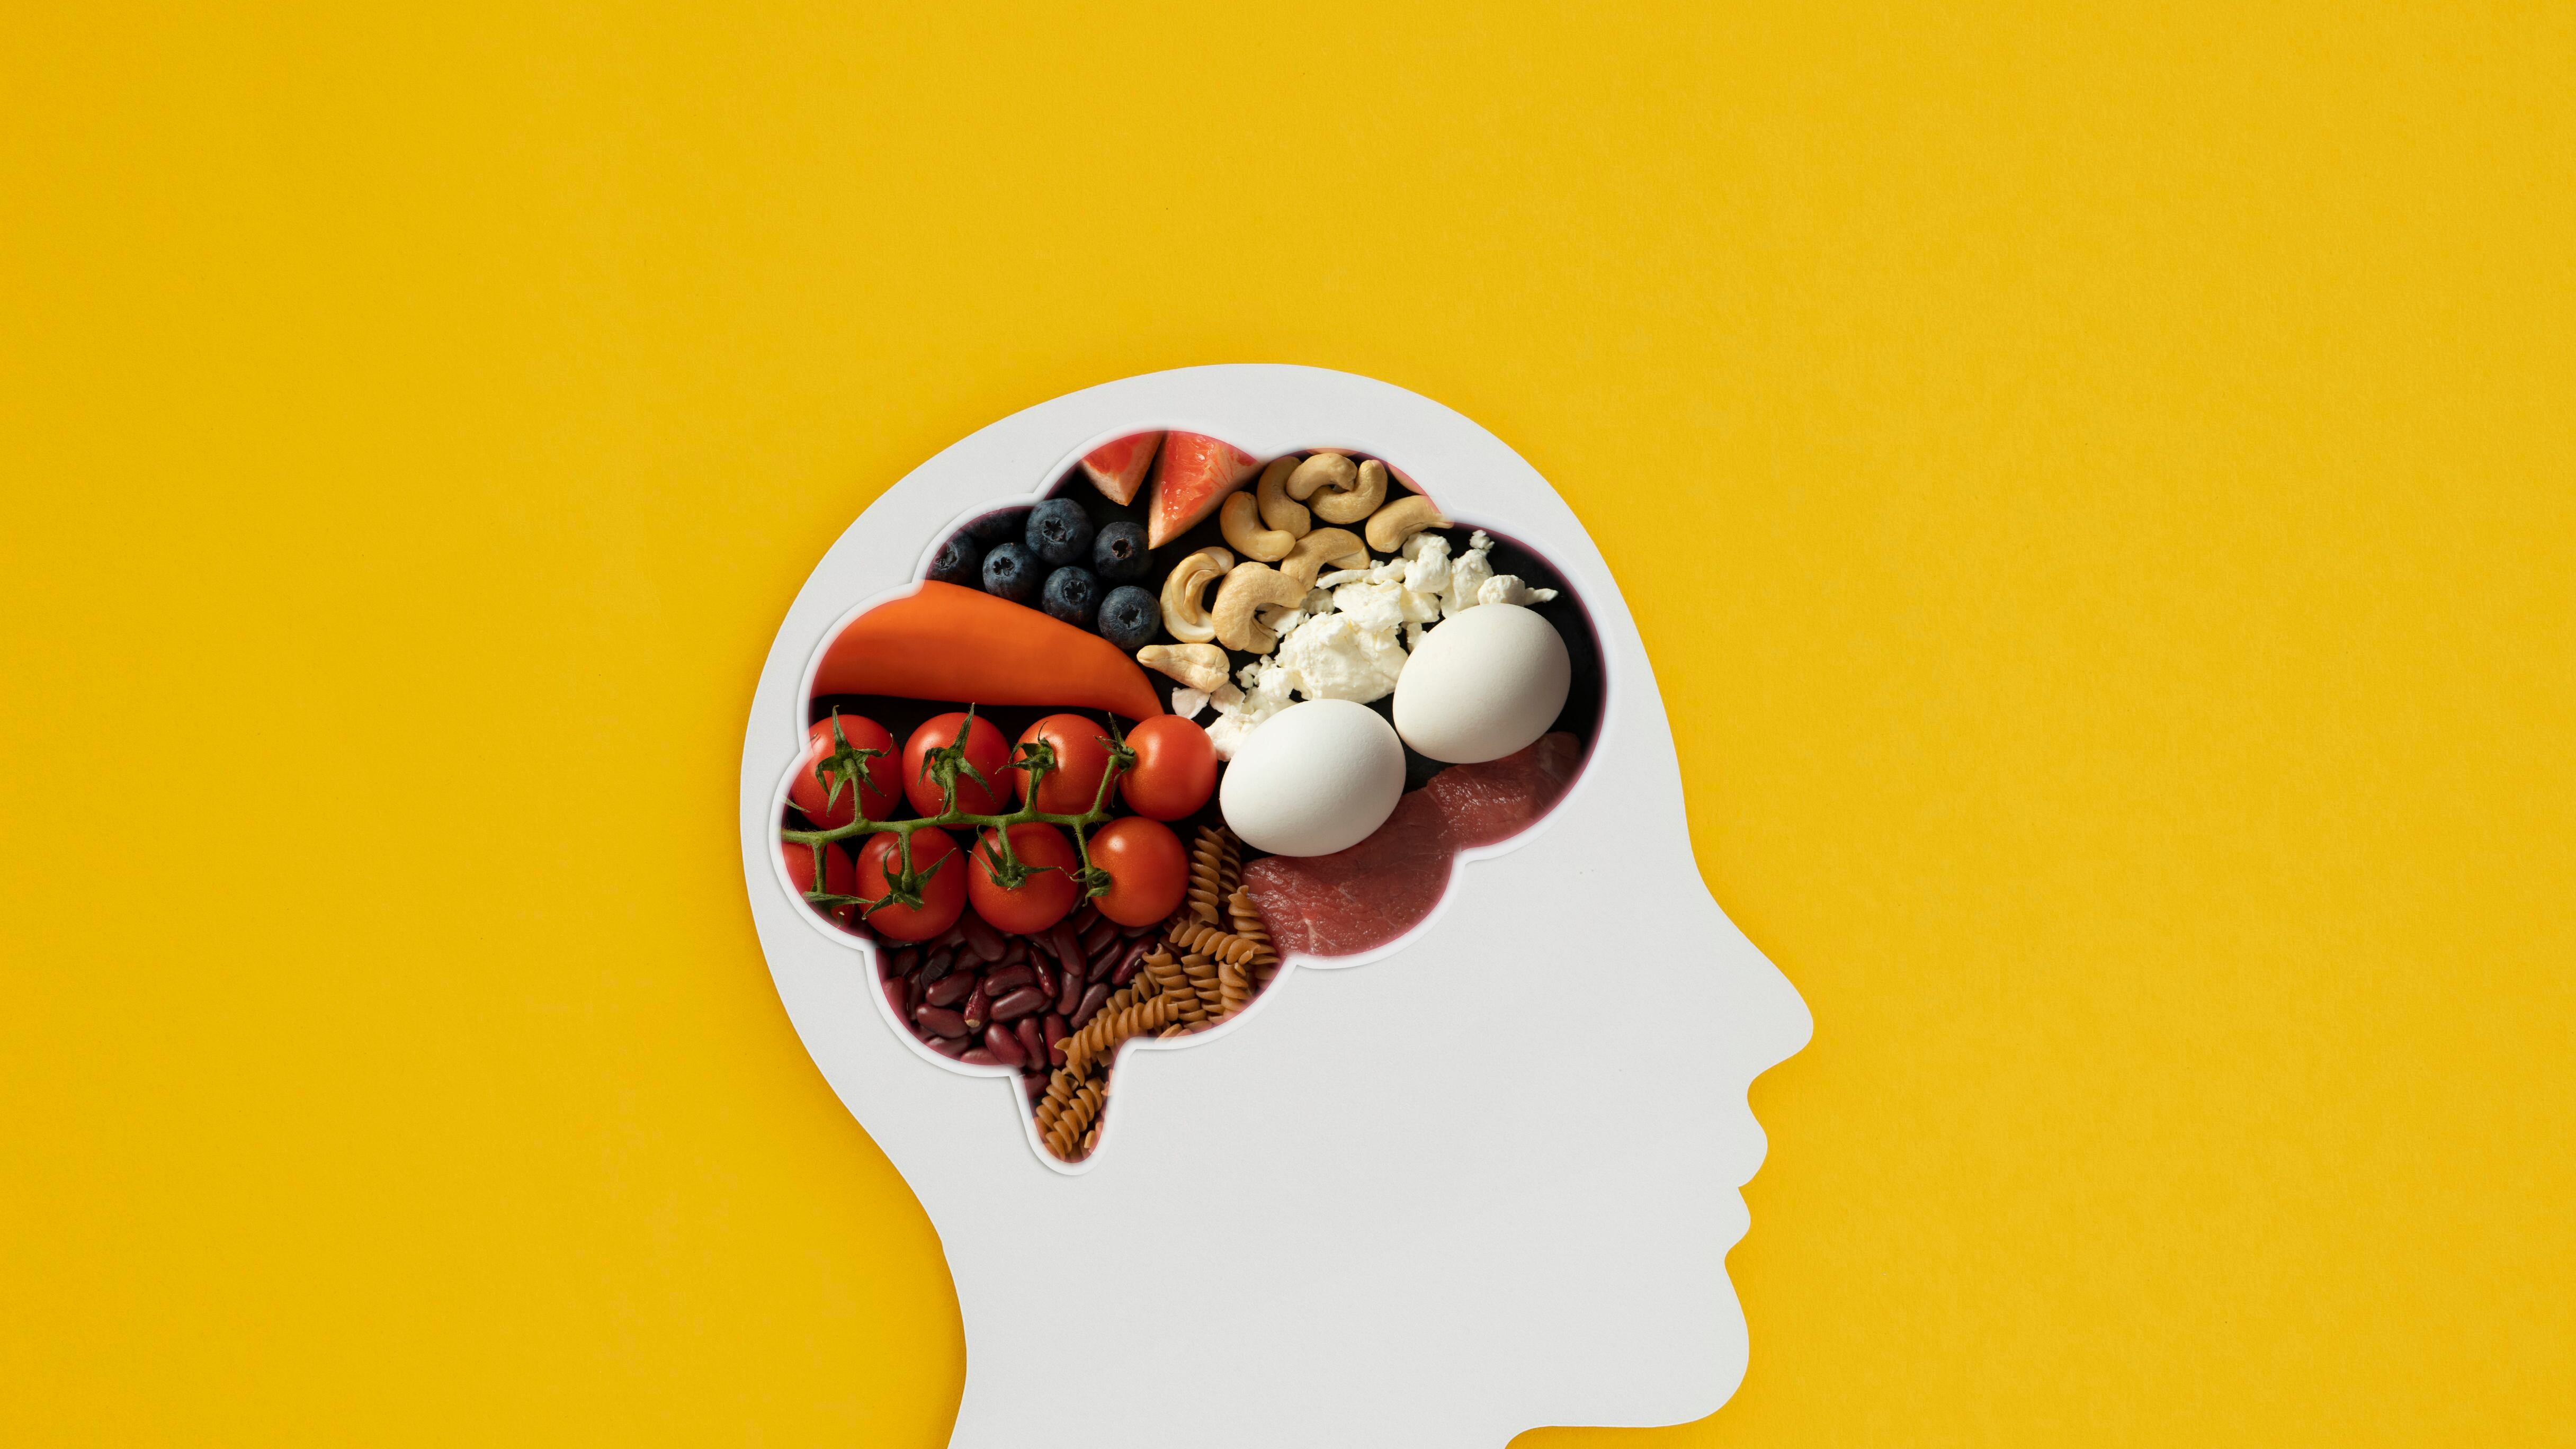 Bienestar. Según los expertos, una dieta adecuada rica en antioxidantes y polifenoles no sólo mejorará su salud mental, sino que también ralentizará su deterioro cognitivo.